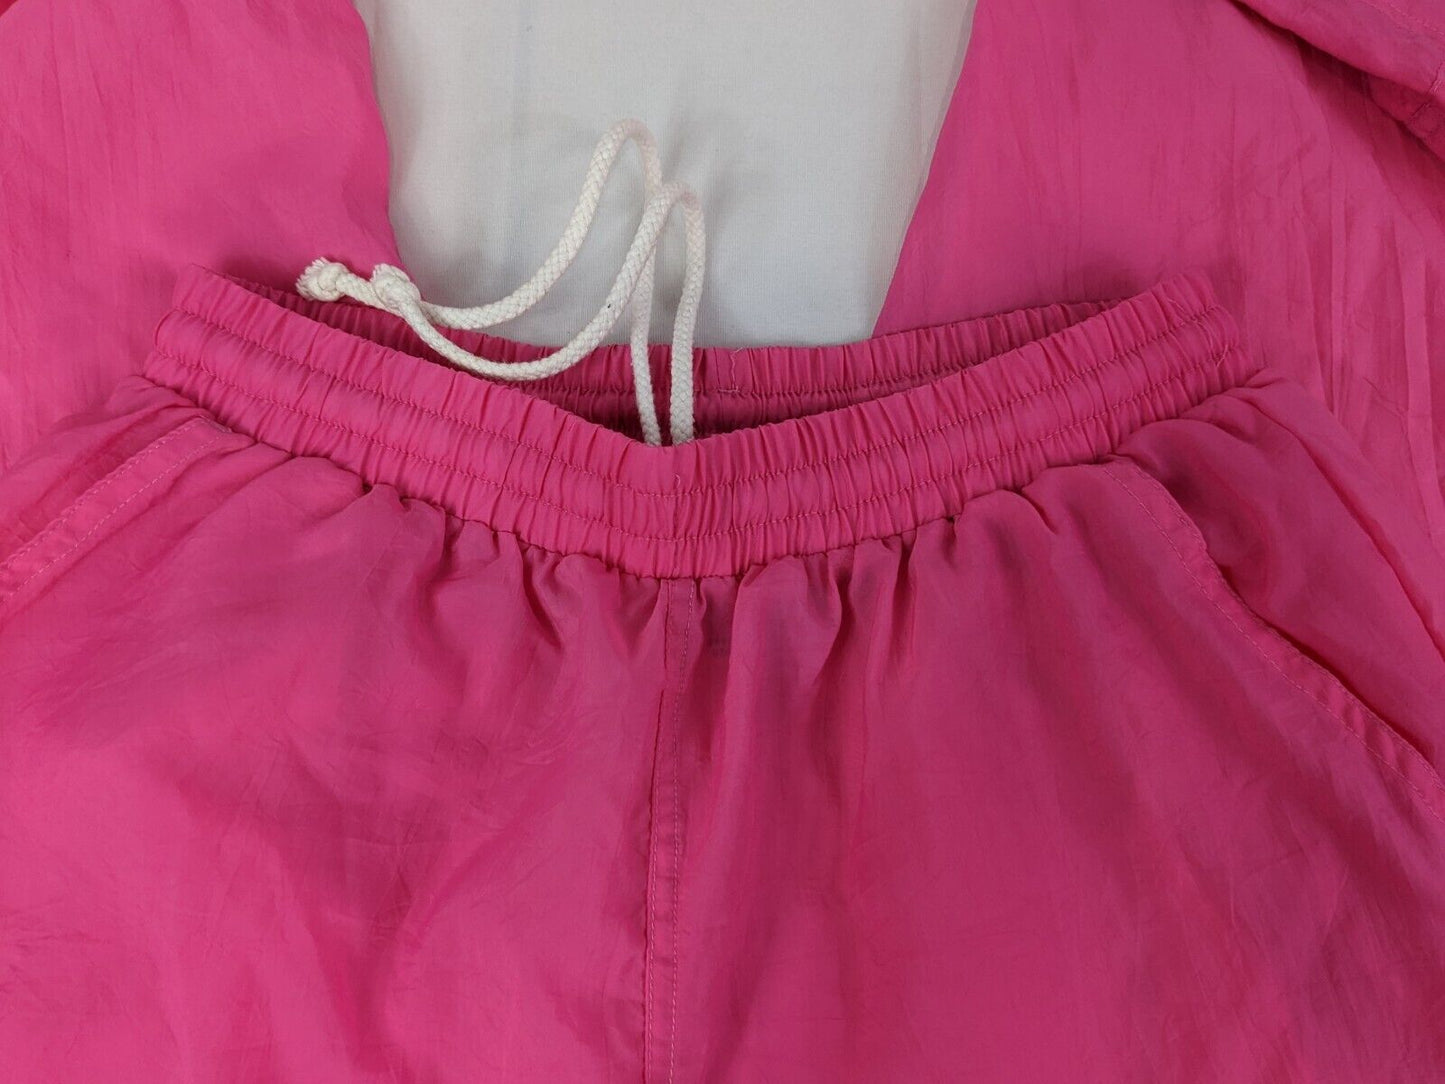 Puma Women's Activewear Jogger Pants & Full-Zip Breathable Jacket Set Pink Sz M